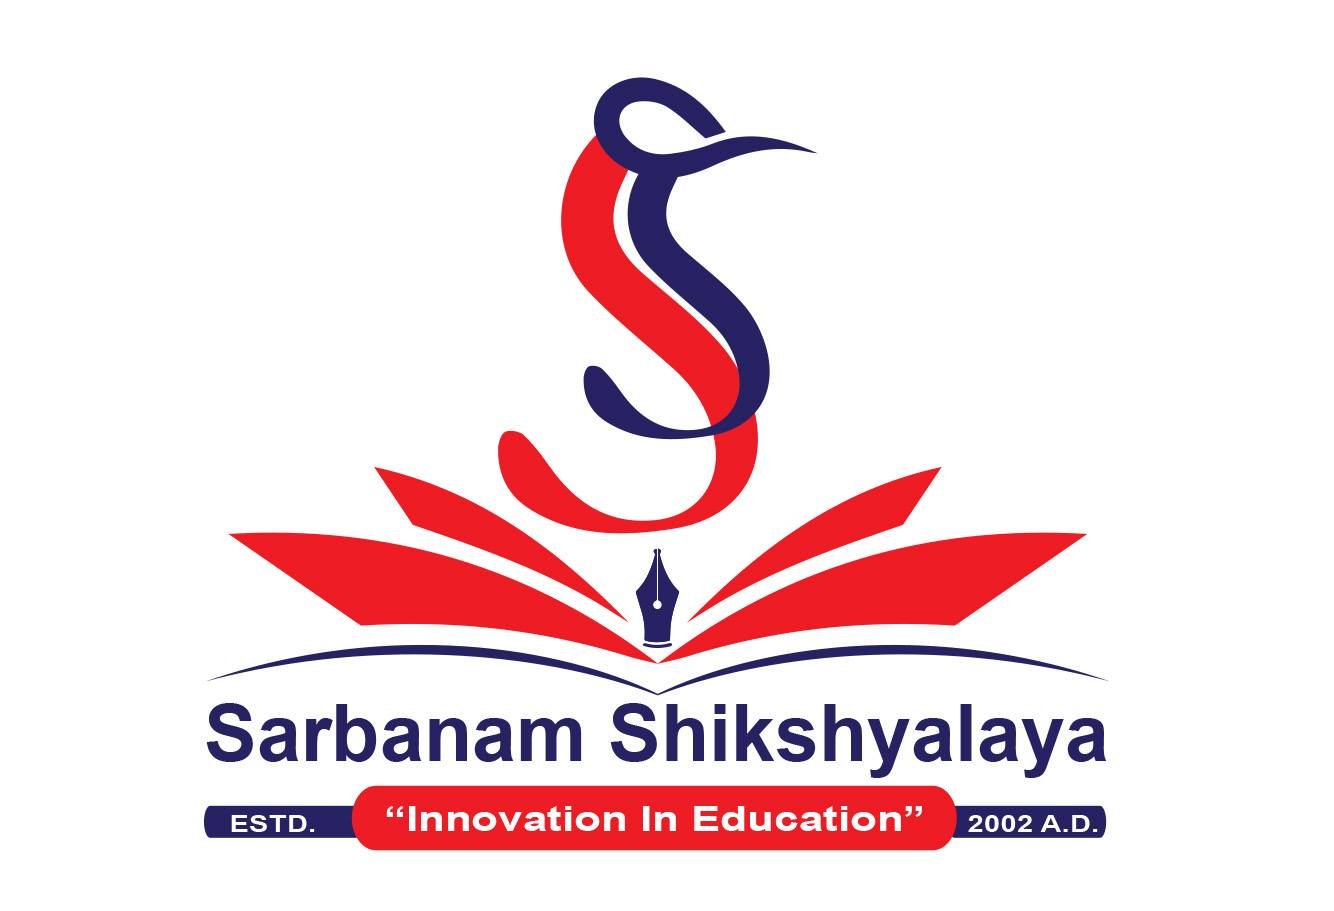 Sarbanam Shikshyalaya